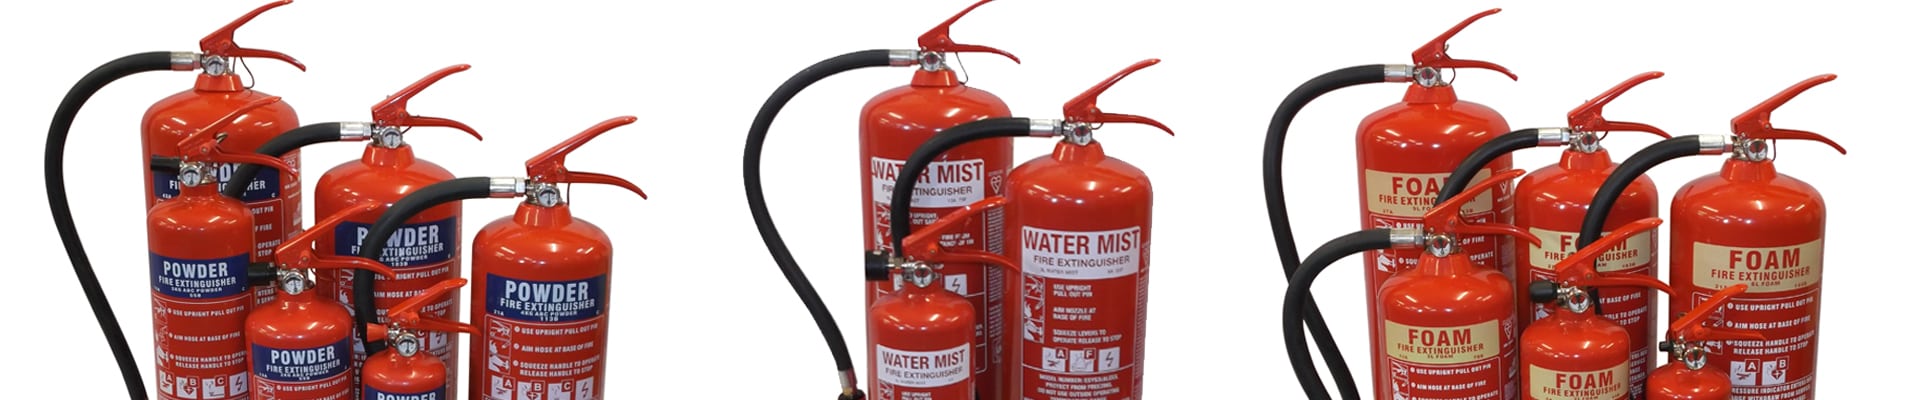 Fire Extinguisher Supply, Installation & Maintenance